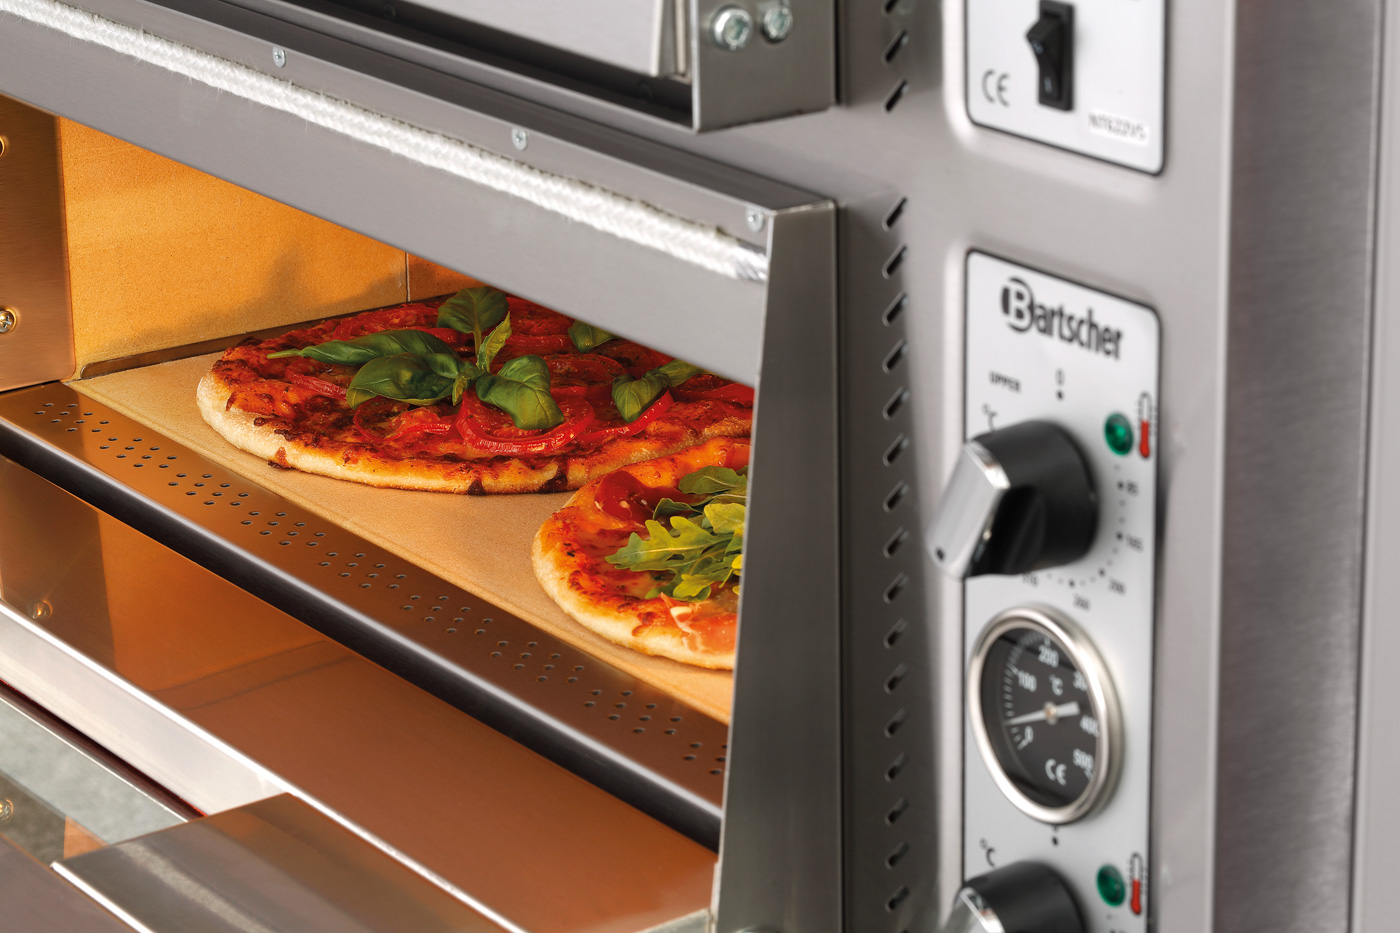 Bartscher Pizzaofen NT 622VS | Spannung: 400 V |Maße: 93 x 83,5 x 73,0 cm. Gewicht: 151,6 kg